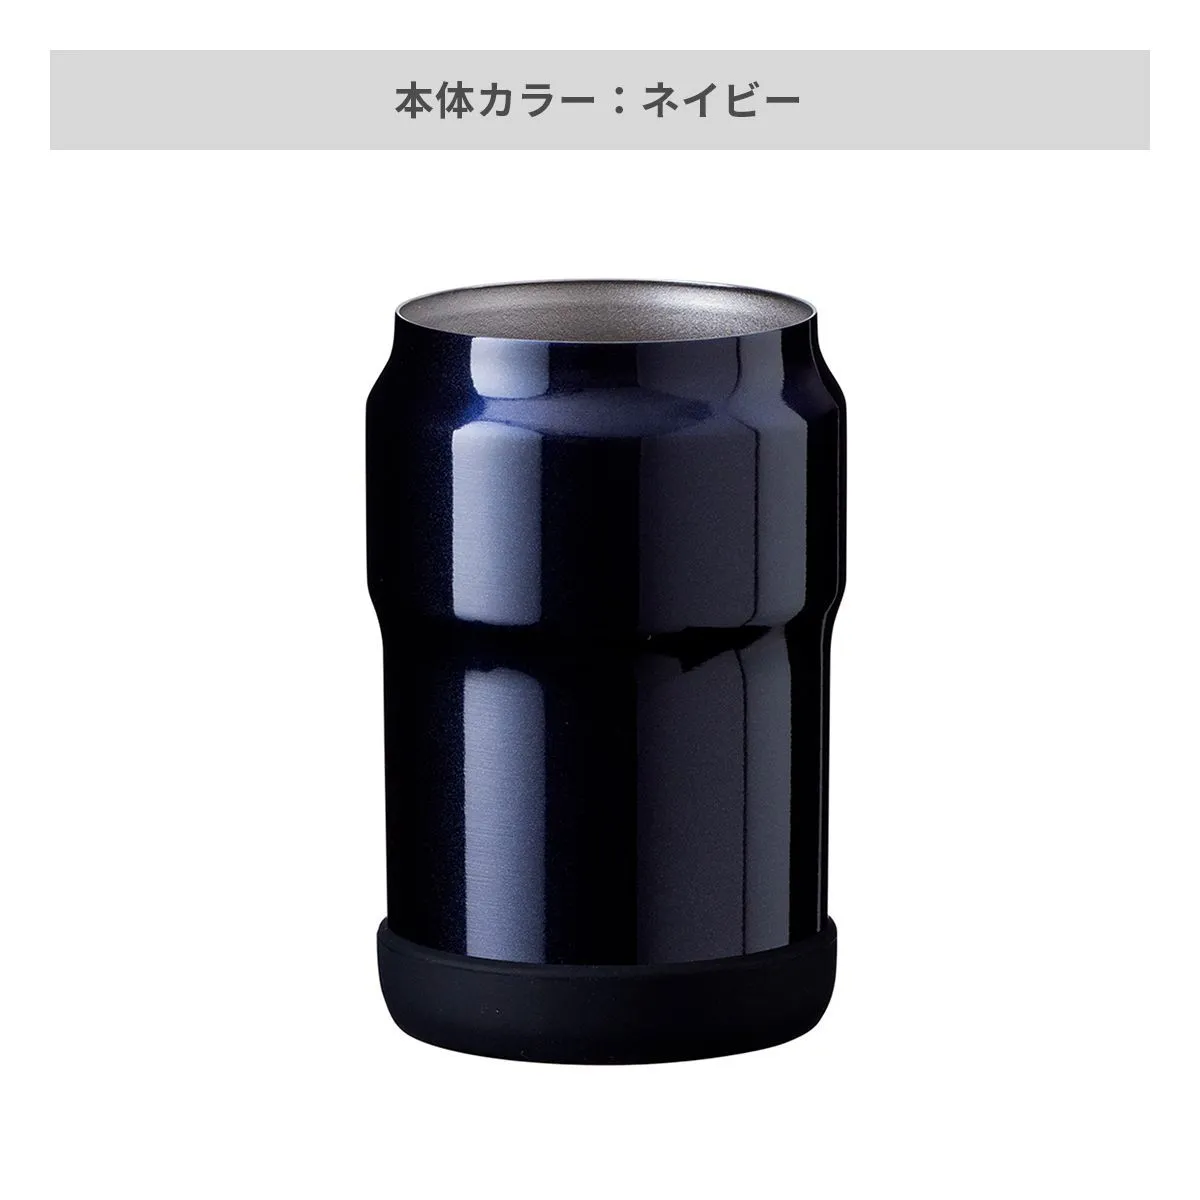 ウェンズ 保冷缶ホルダー 350ml缶用【オリジナルペットボトルホルダー / 回転シルク印刷】 画像5